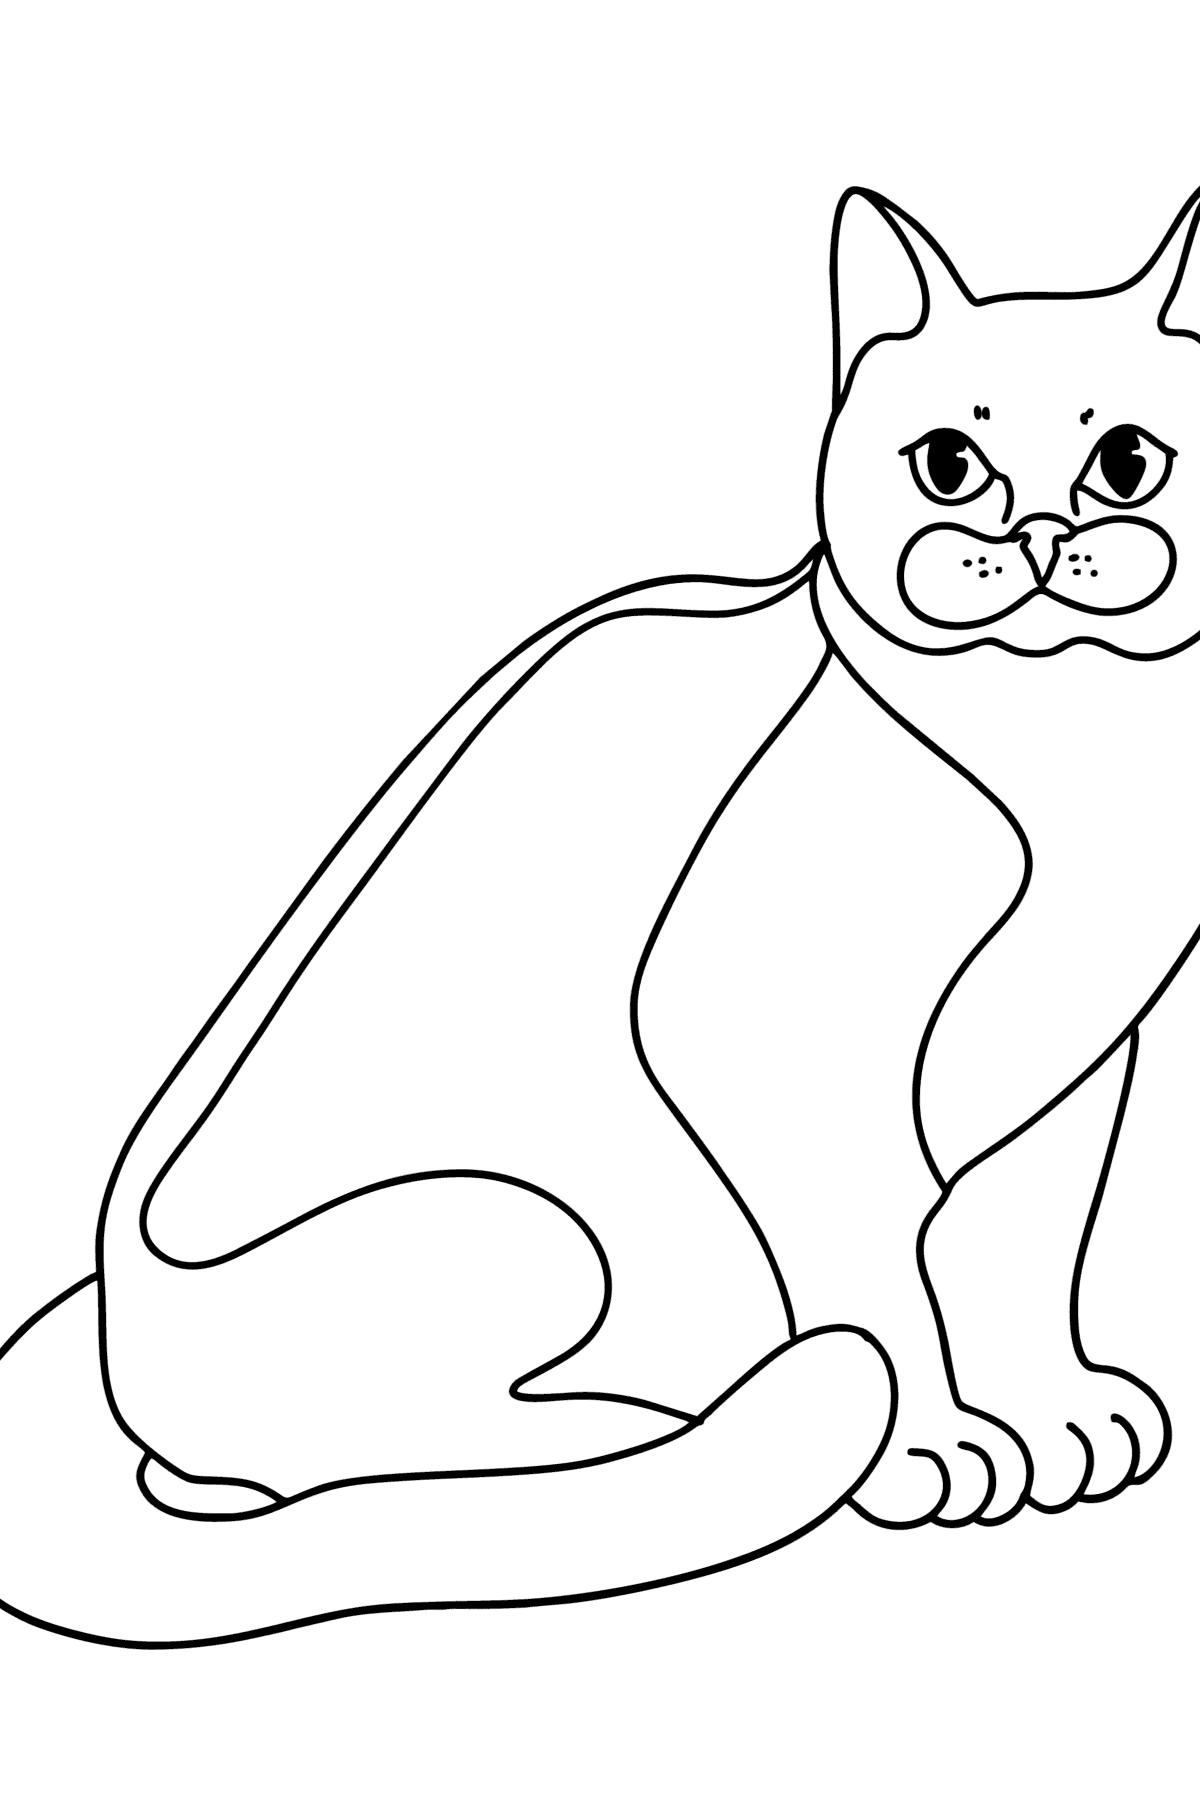 Desen de colorat pisica bombay - Desene de colorat pentru copii